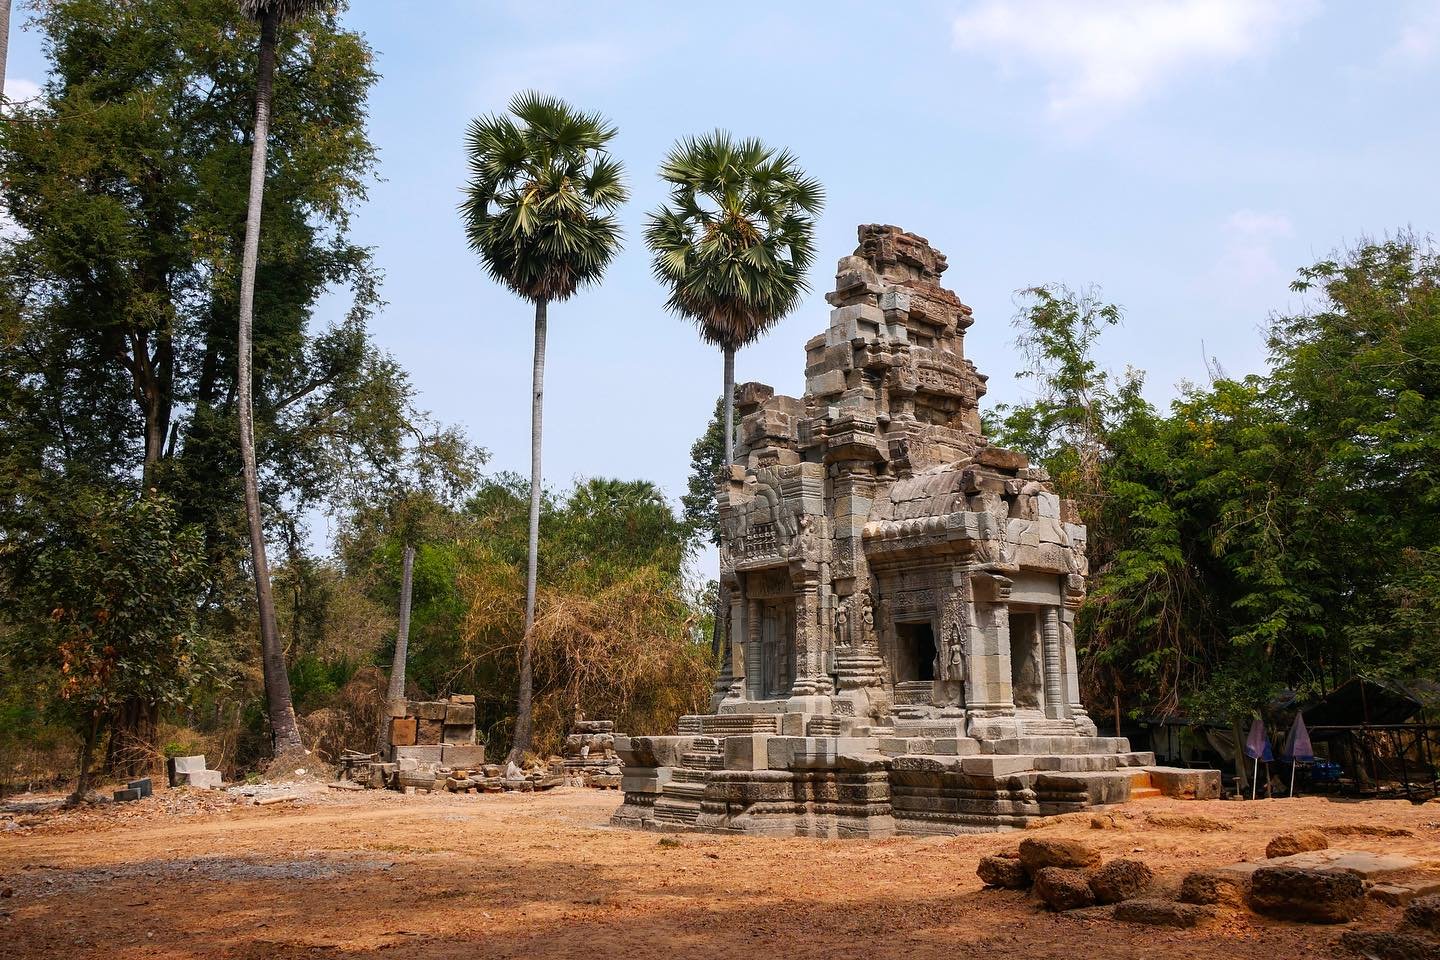 Notre derni&egrave;re journ&eacute;e sur le site arch&eacute;ologique Angkor a &eacute;t&eacute; superbe: nous avons lou&eacute; un scooter &eacute;lectrique et nous cherchions &agrave; visiter les plus petits temples moins fr&eacute;quent&eacute;s. 